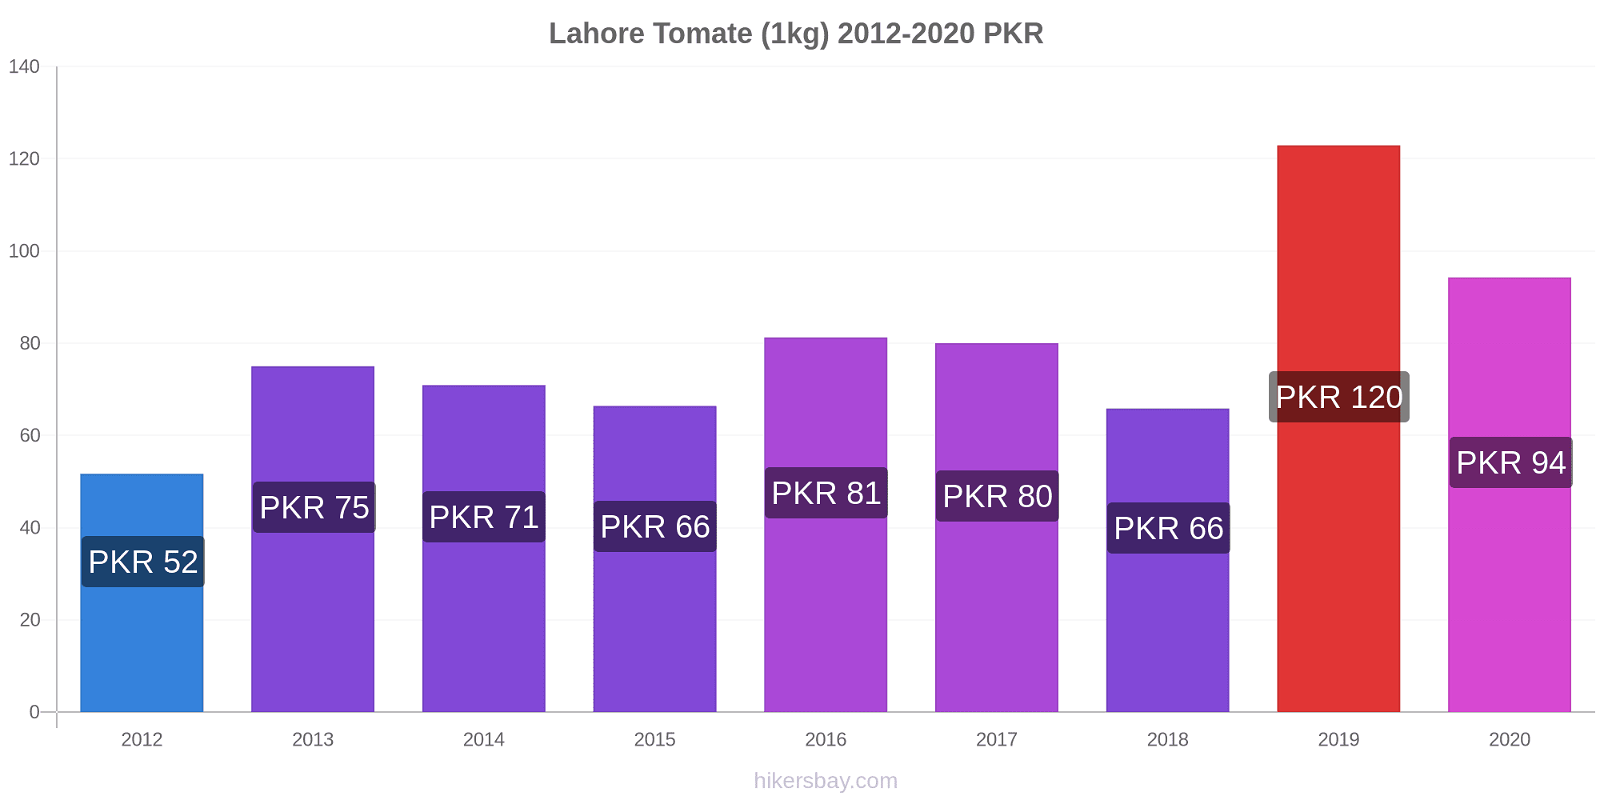 Lahore variação de preço Tomate (1kg) hikersbay.com